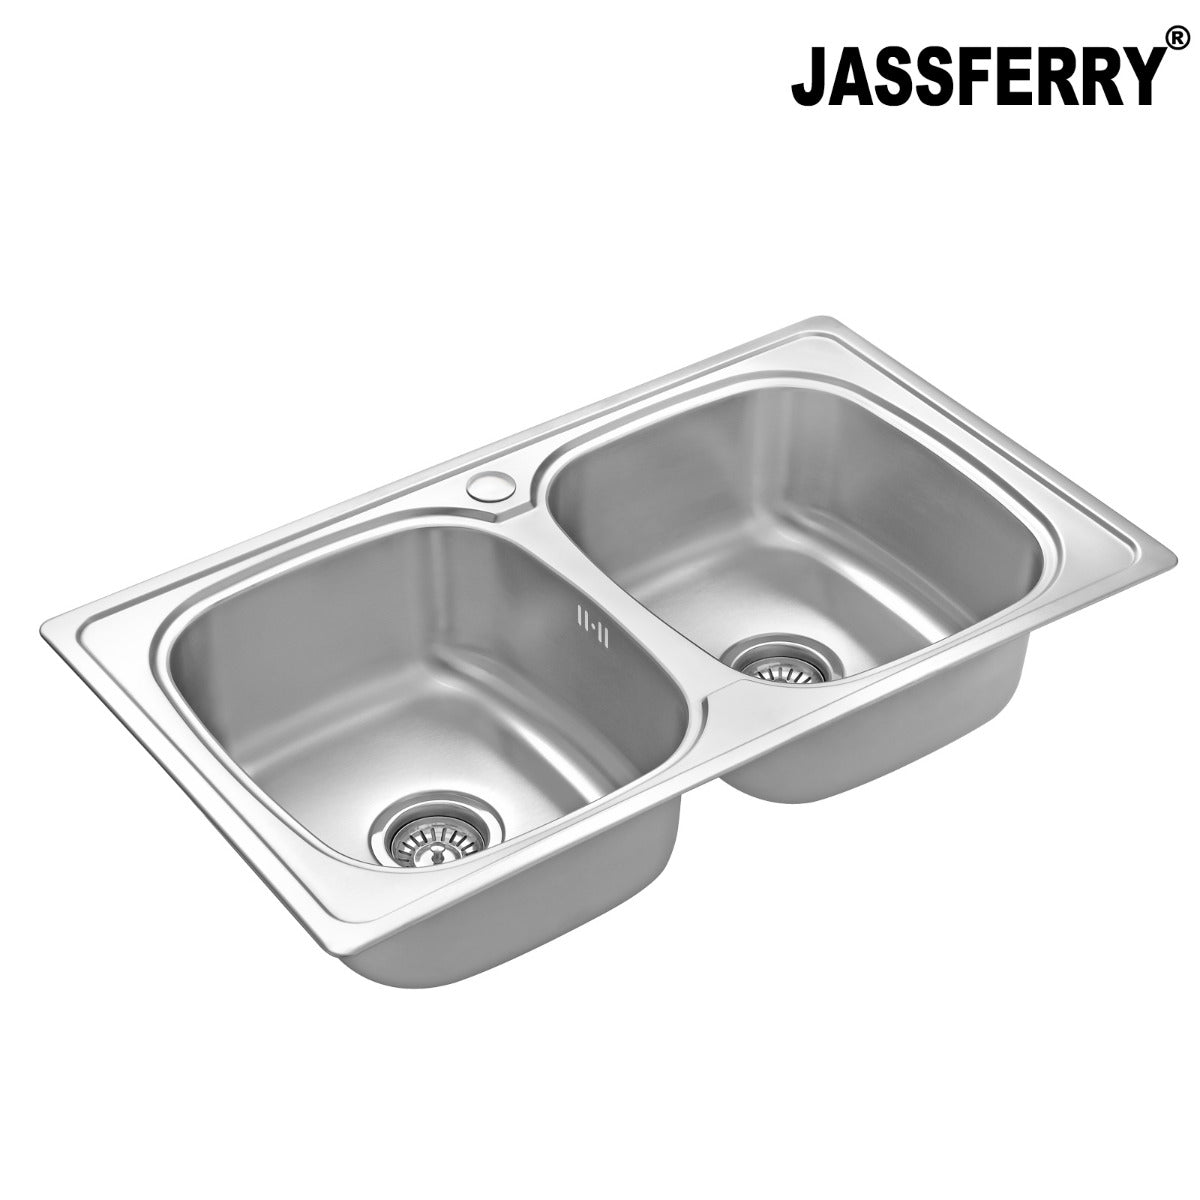 JassferryJASSFERRY Stainless Steel Kitchen Sink Inset 2 Double Bowl No DrainerKitchen Sinks